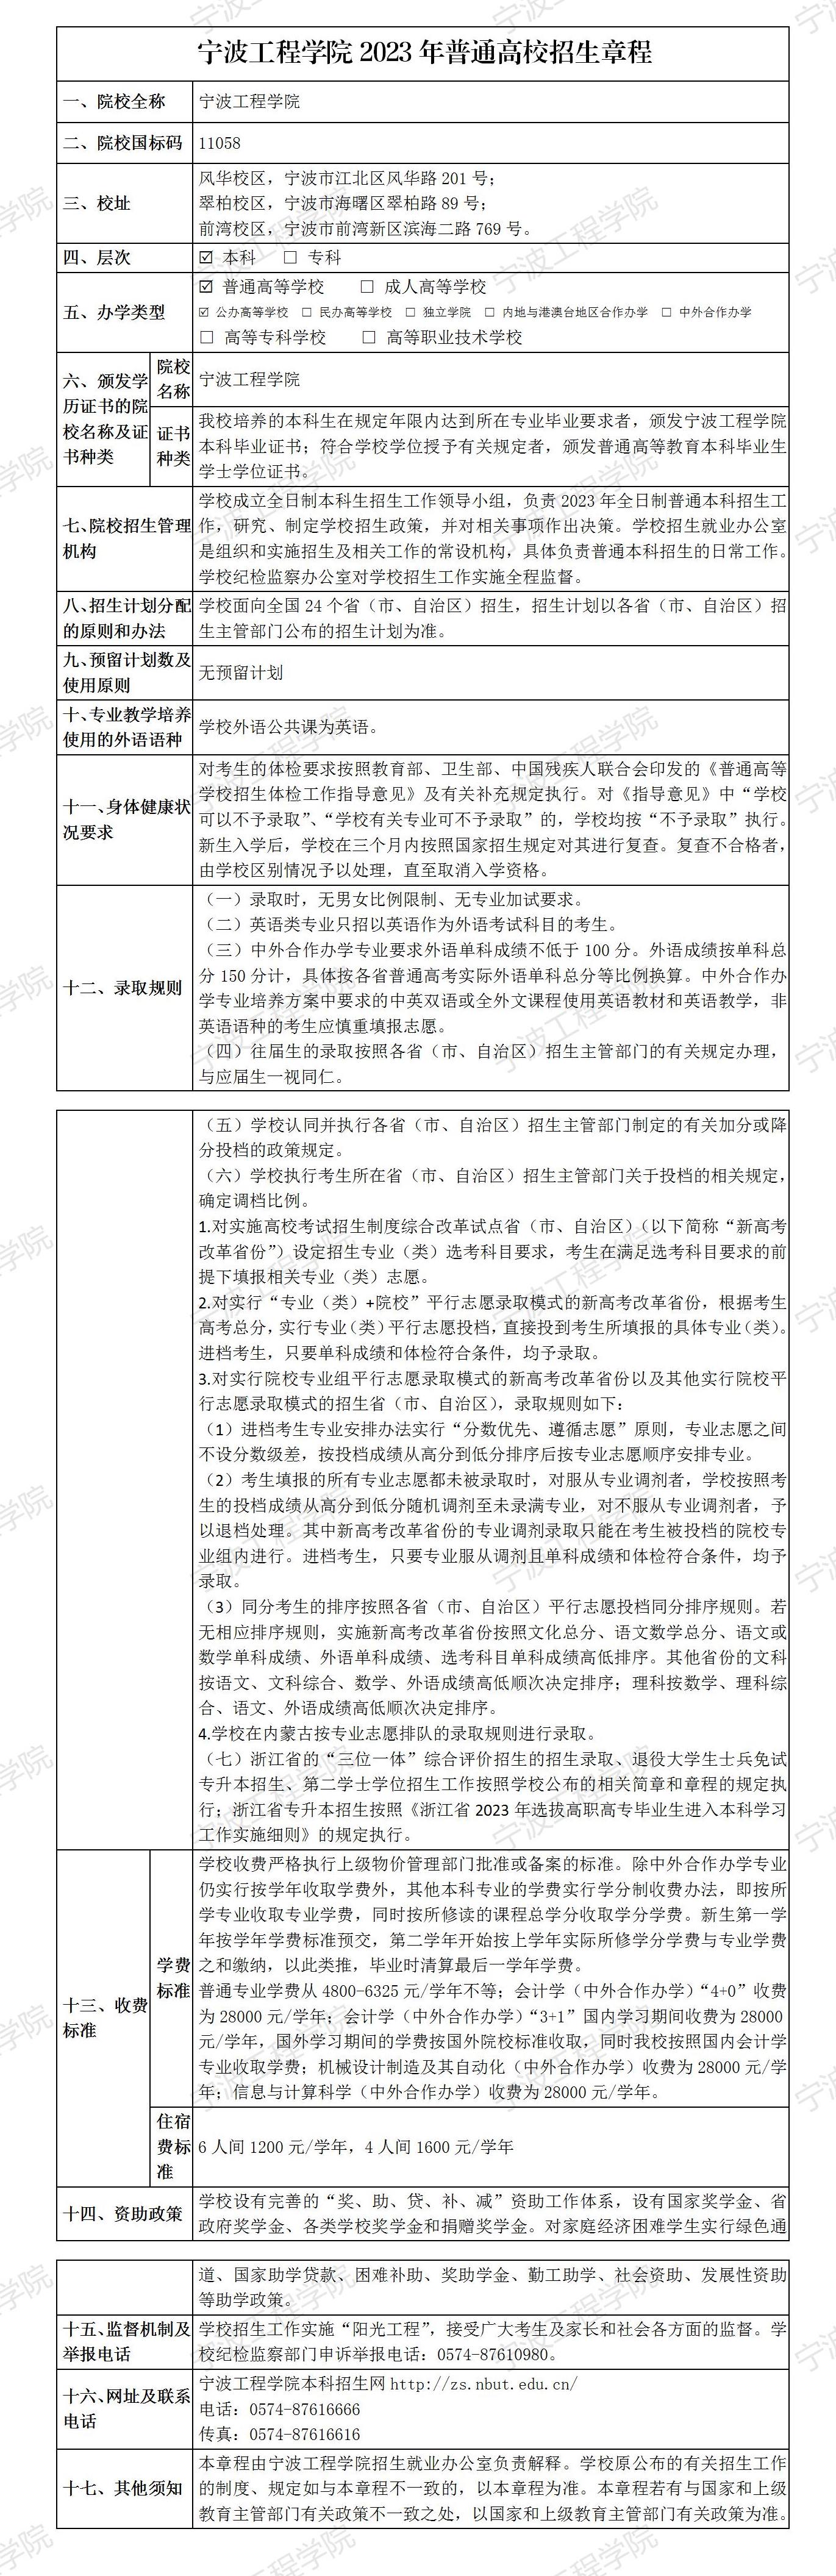 宁波工程学院2023年普通高校招生章程